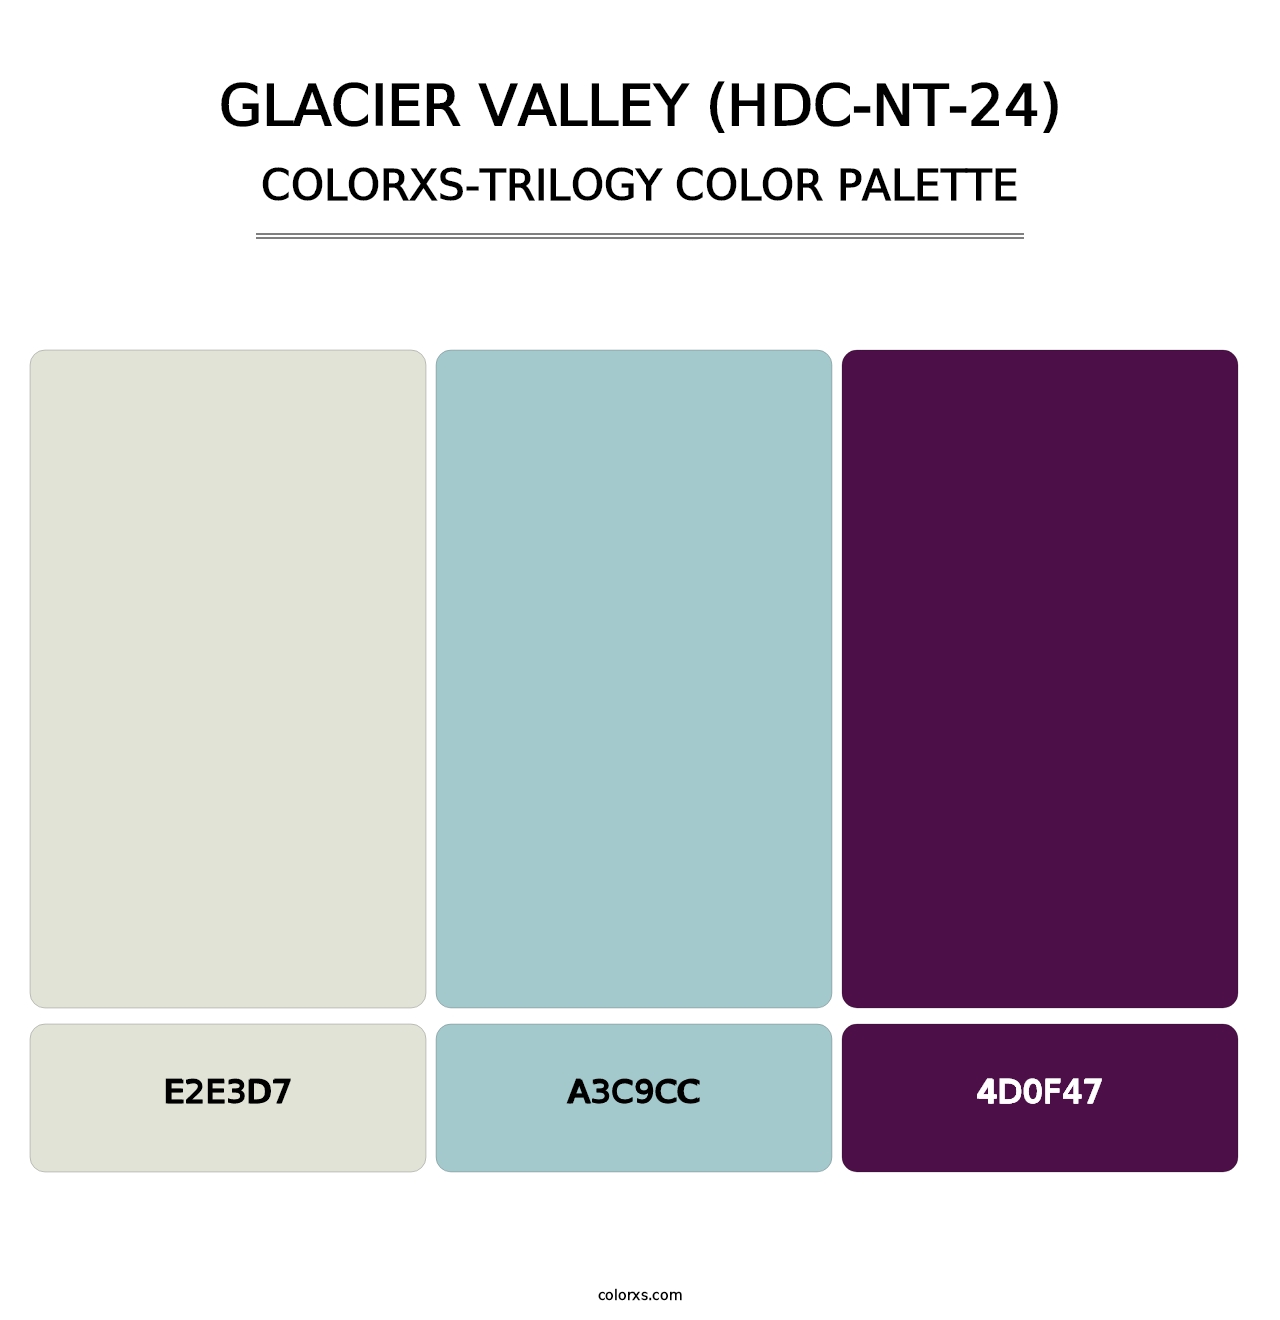 Glacier Valley (HDC-NT-24) - Colorxs Trilogy Palette